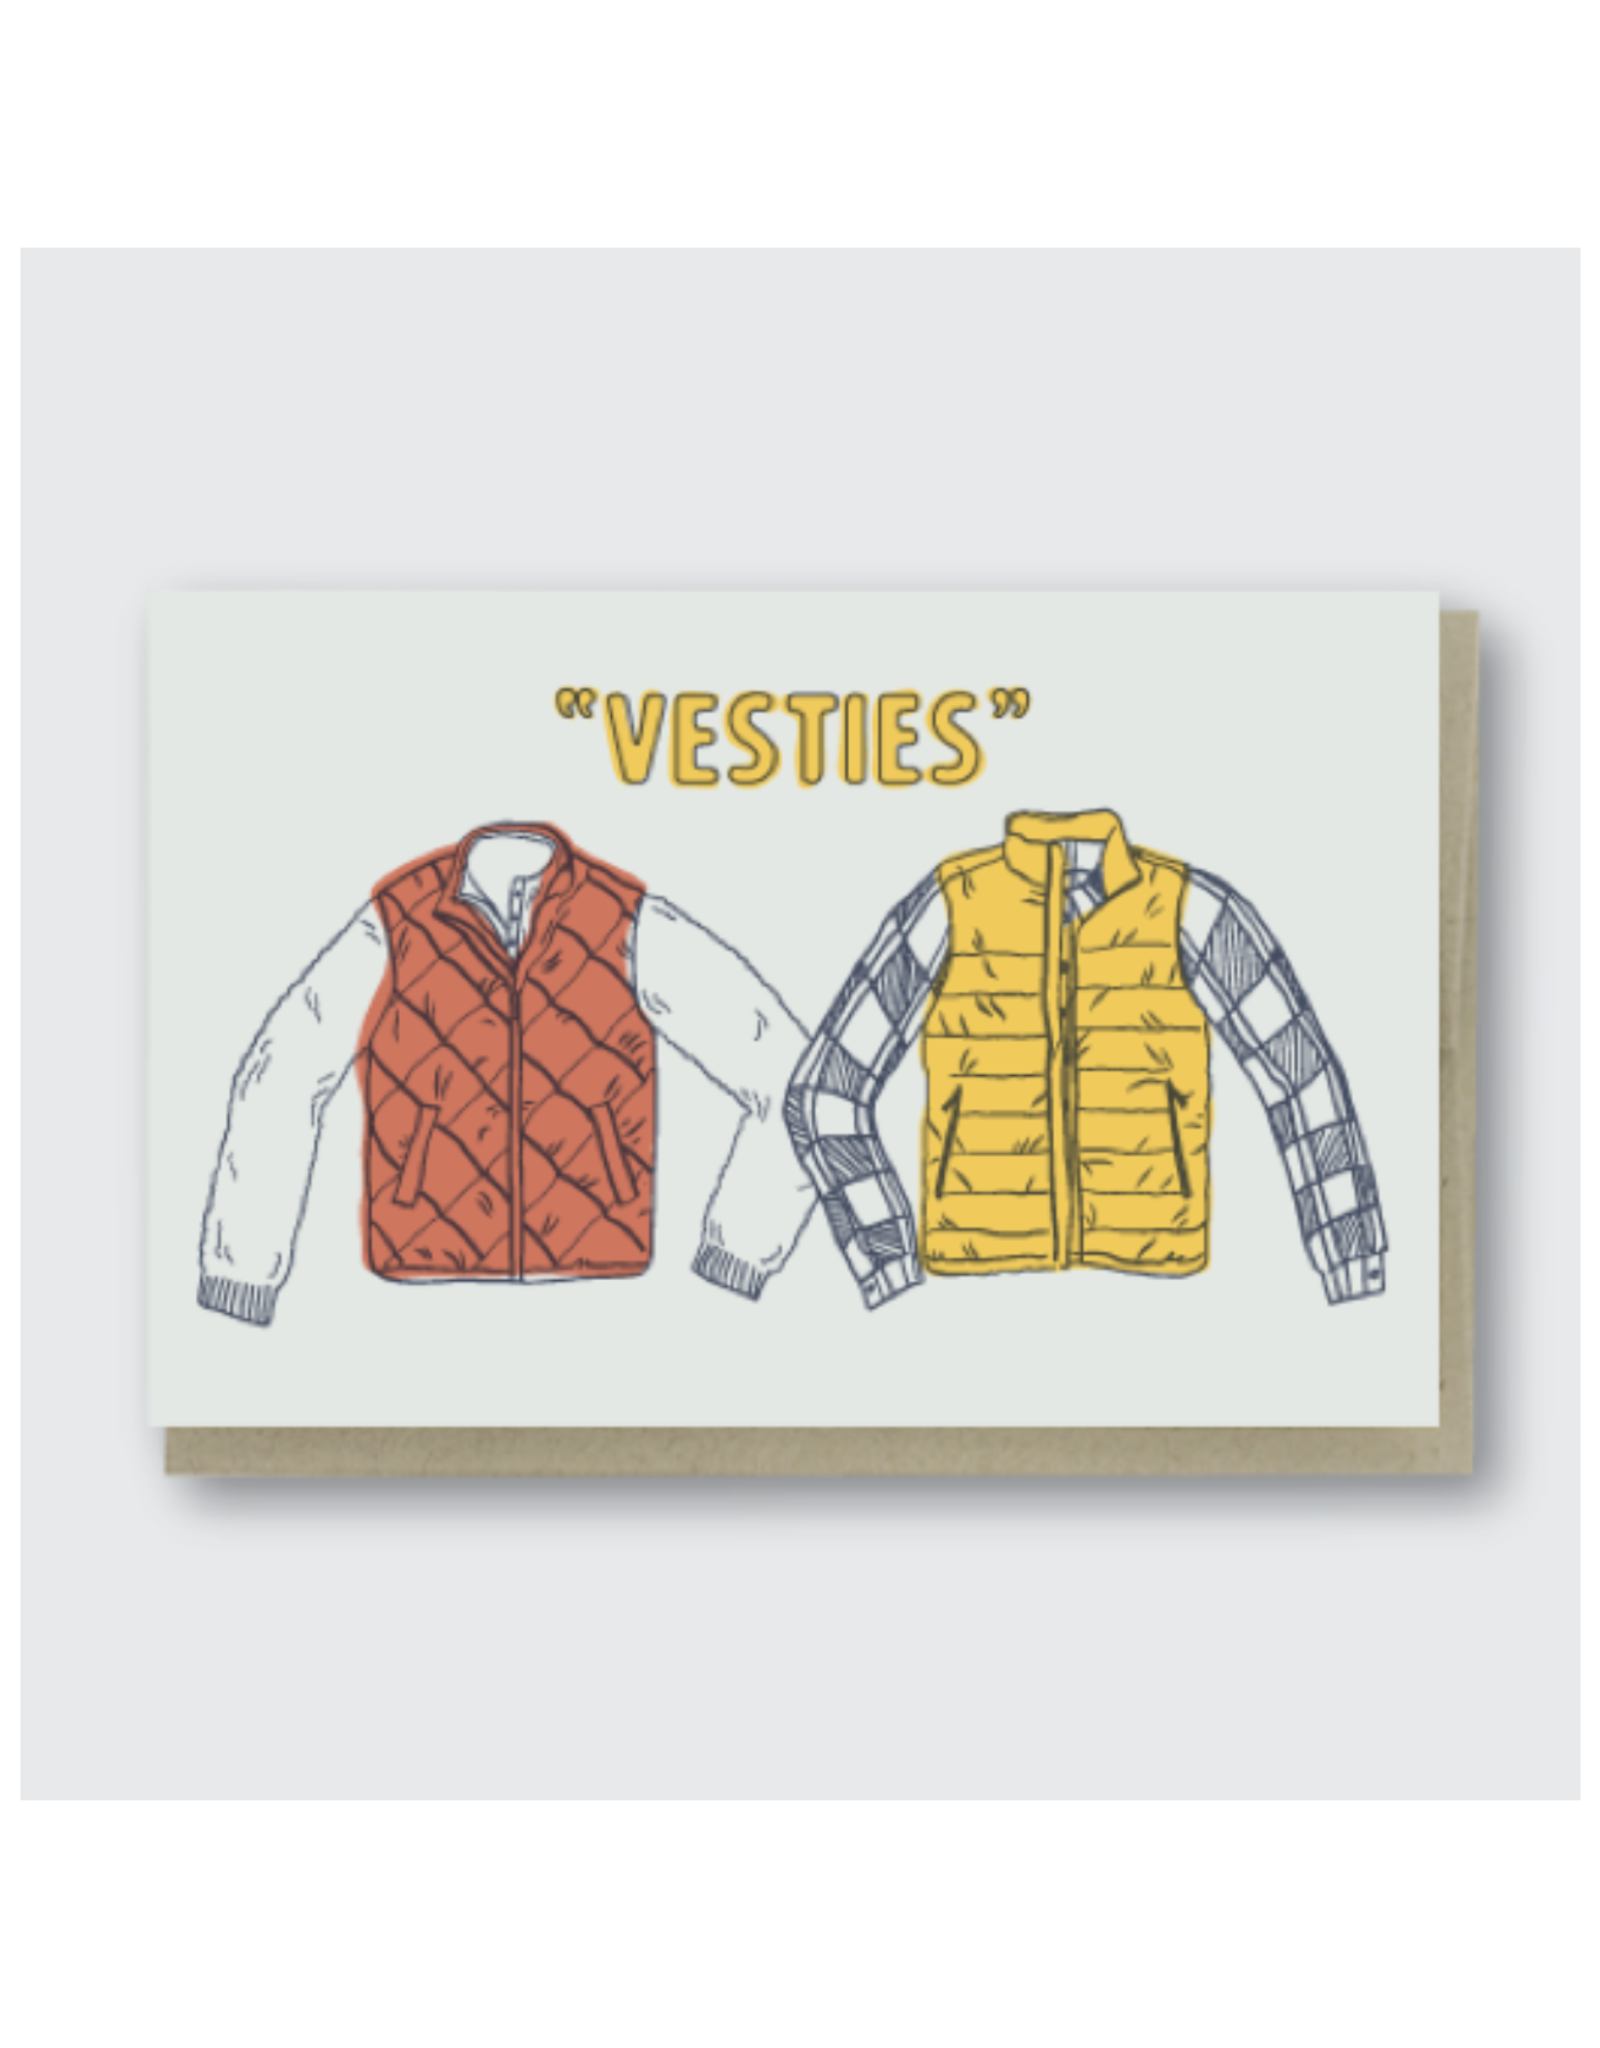 Vesties Besties Greeting Card